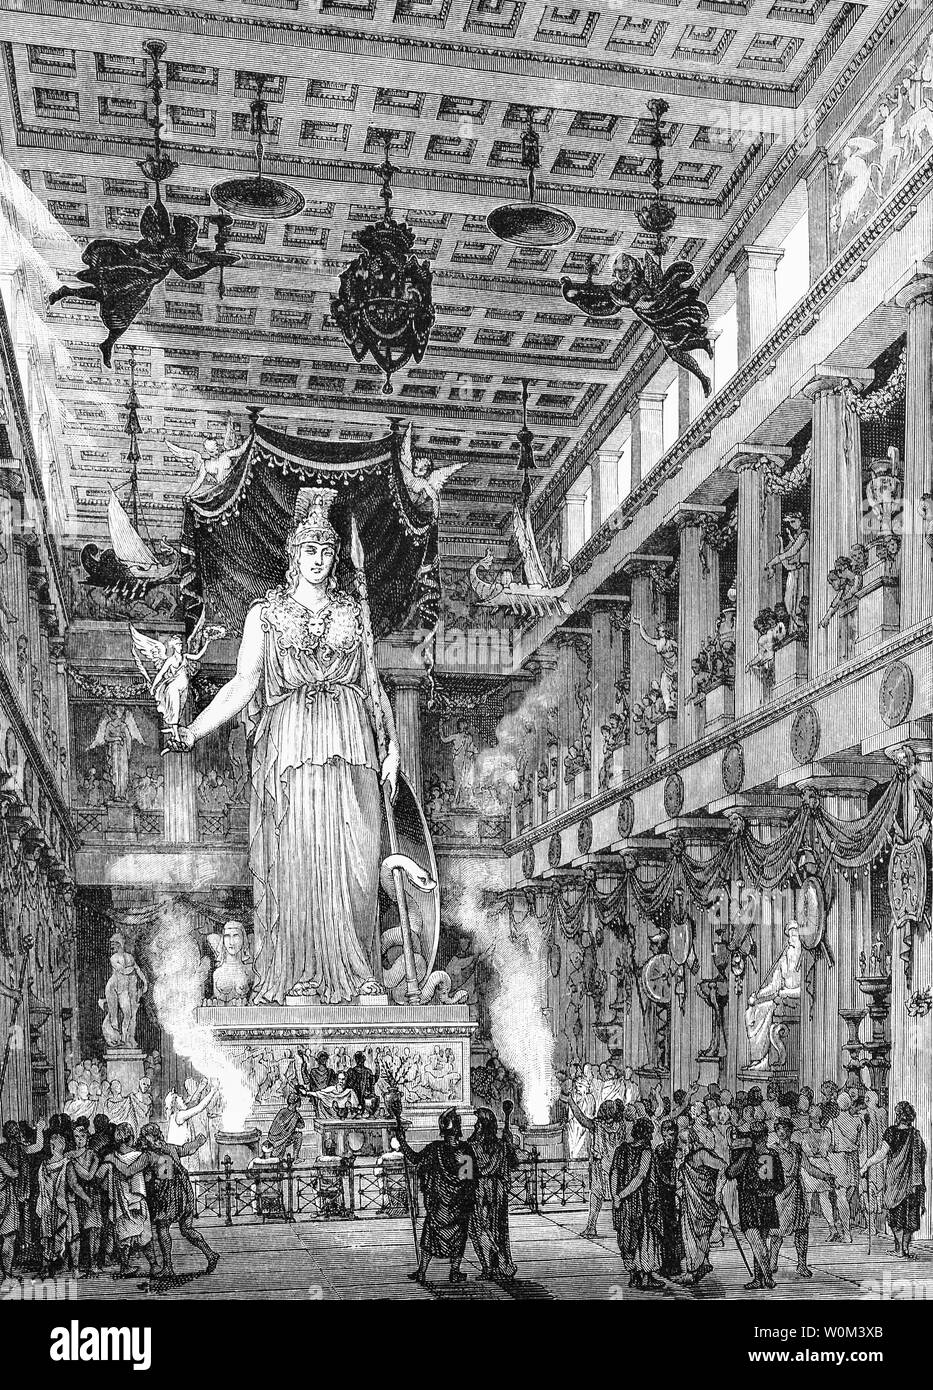 Une reconstruction de l'intérieur du Parthénon, un ancien temple sur l'Acropole, Athènes, Grèce, dédié à la déesse Athéna, patronne des Athéniens. Achevé en 438 avant J.-C., la décoration du bâtiment s'est poursuivie jusqu'à 432 BC. Il est considéré comme l'apogée de l'ordre dorique avec ses sculptures décoratives a examiné quelques-uns des points forts de l'art grec aux Athéniens, le Parthénon et d'autres monuments de l'Acropole Periclean ont été considérés, fondamentalement, comme une célébration de l'Hellenic la victoire sur les envahisseurs perses et comme une action de grâce aux dieux pour que la victoire. Banque D'Images